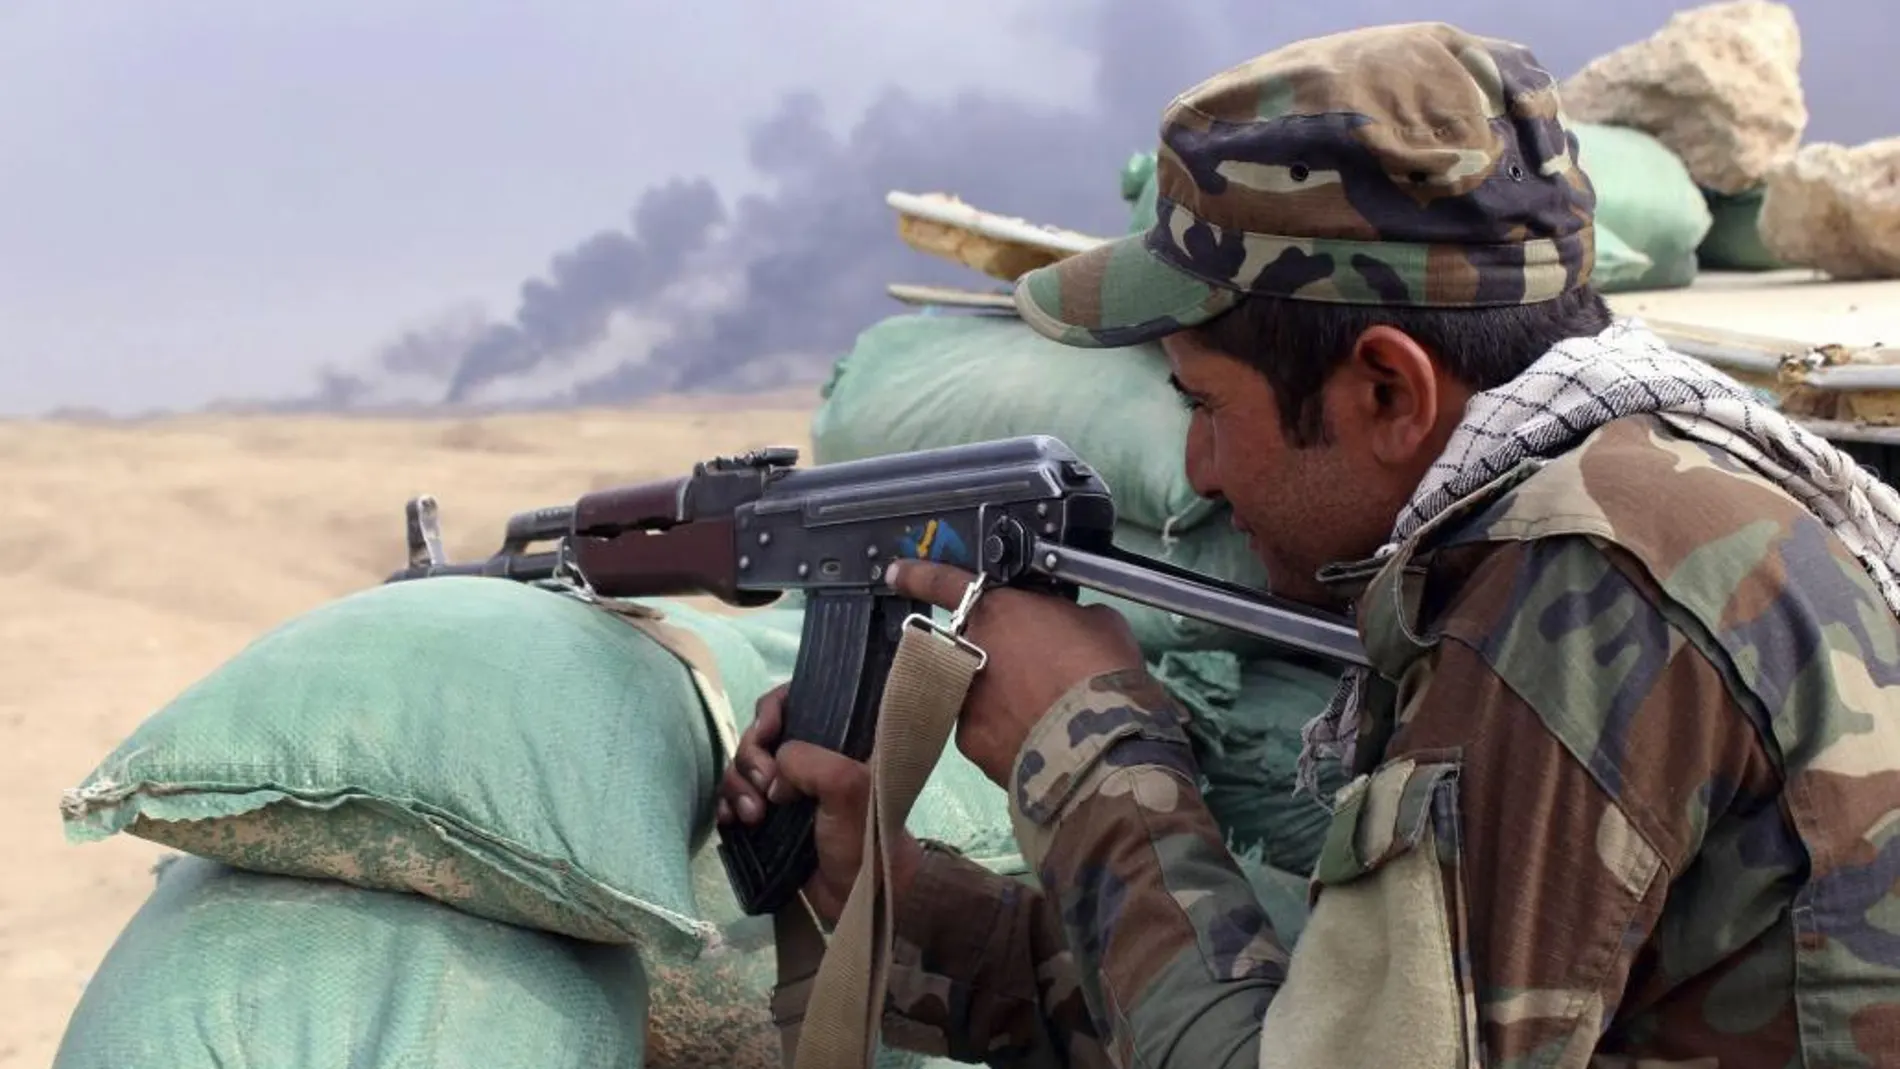 Un soldado iraquí apunta con su arma durante los enfrentamientos entre combatientes del Estado Islámico (EI) y las fuerzas iraquíes en las proximidades de la ciudad de Baiji (norte de Irak), hoy, 22 de octubre de 2015.